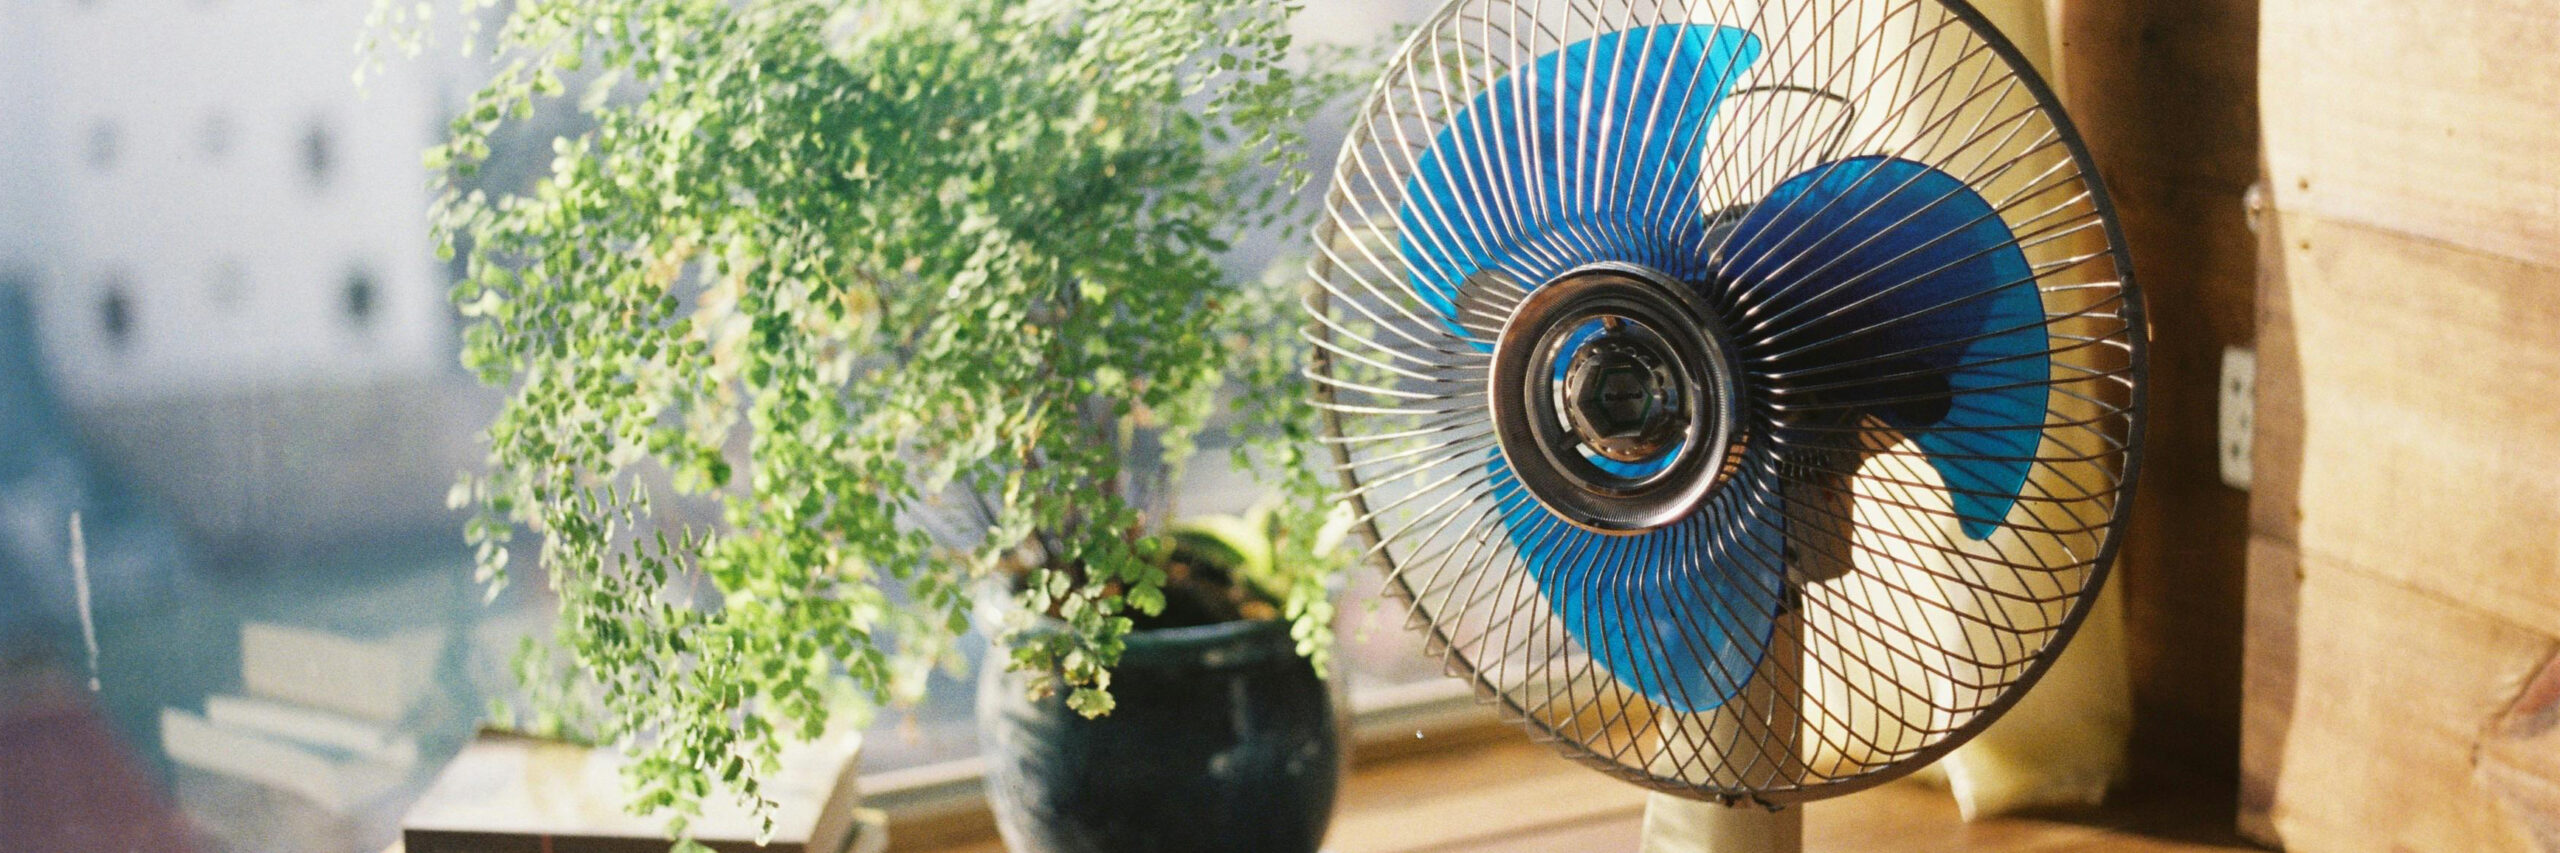 blue electric fan